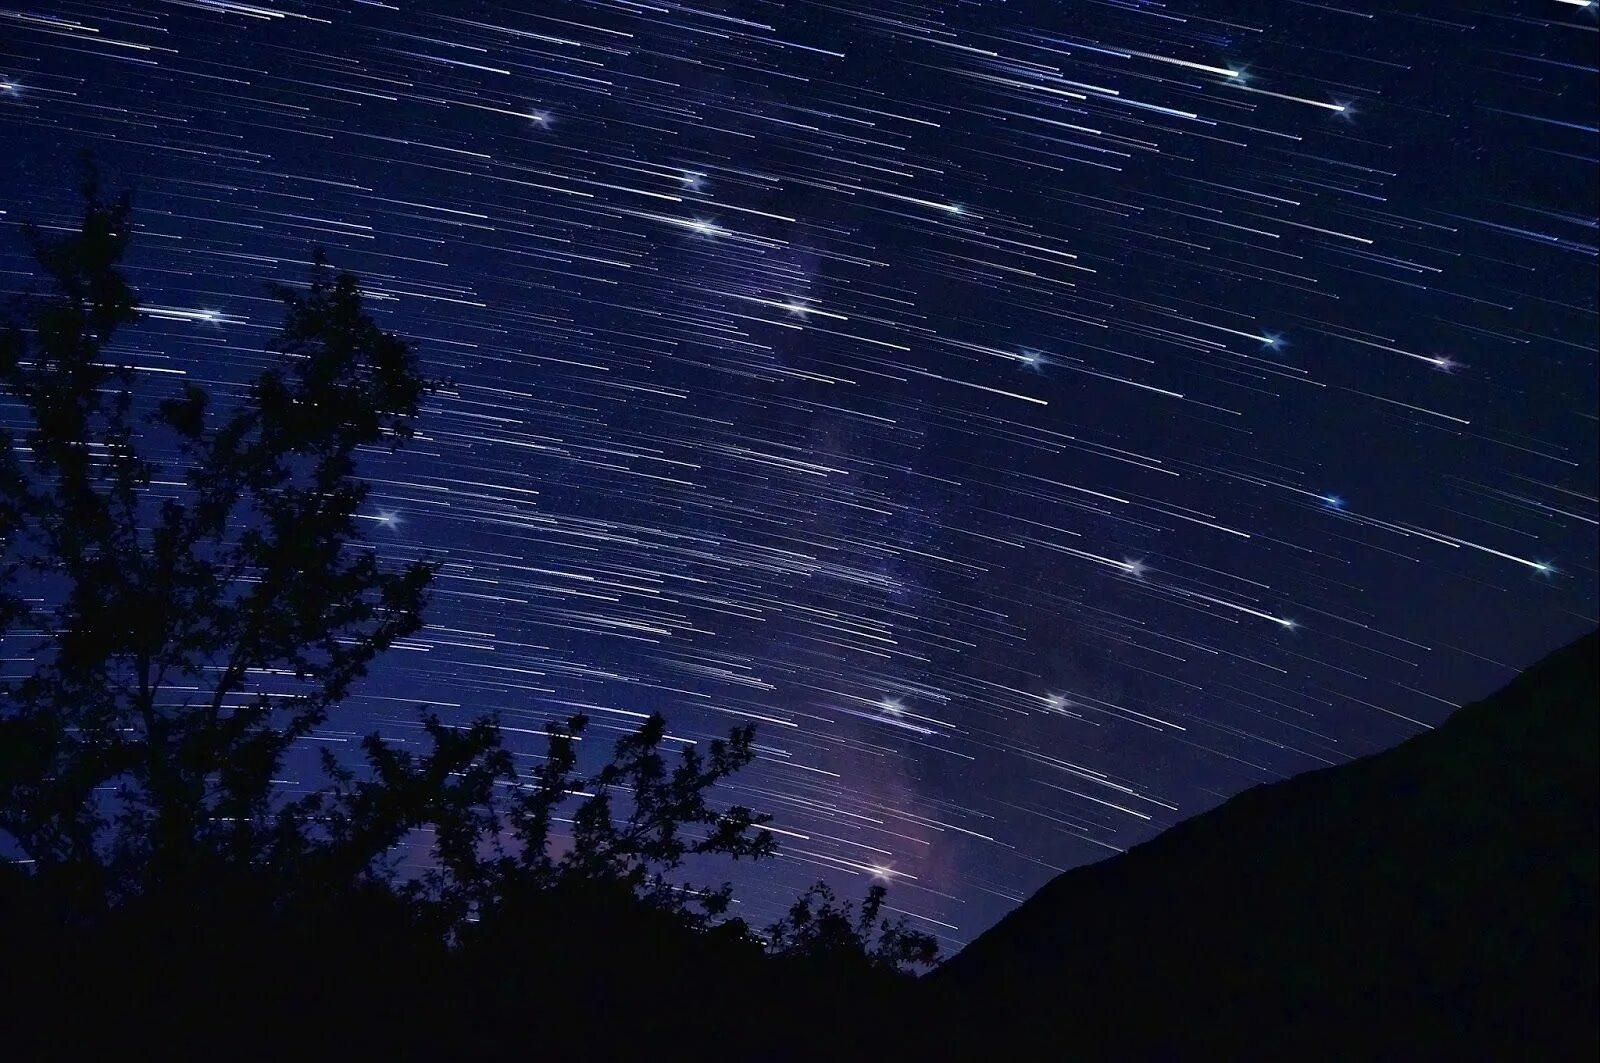 Am falling stars. Звездопад метеоритный дождь. Метеорный поток Дельта Канкриды. Звездное небо. Падающая звезда.